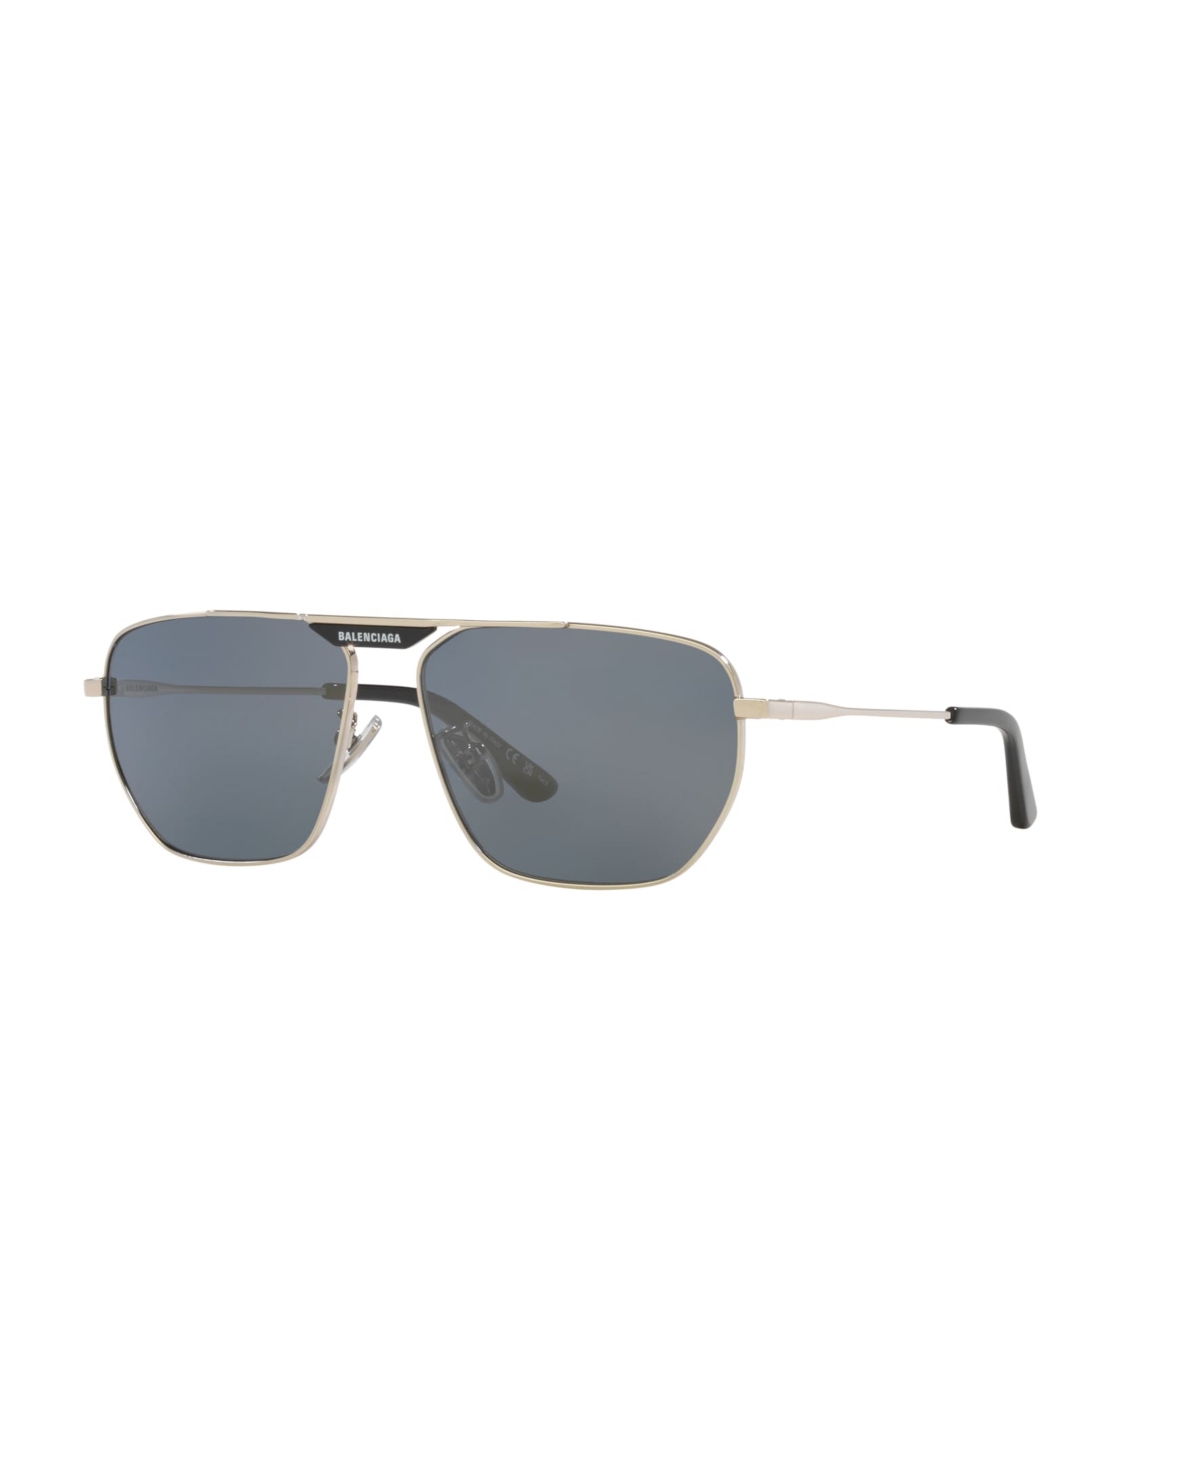 Men's Sunglasses, Bb0298Sa 6E000314 - Silver